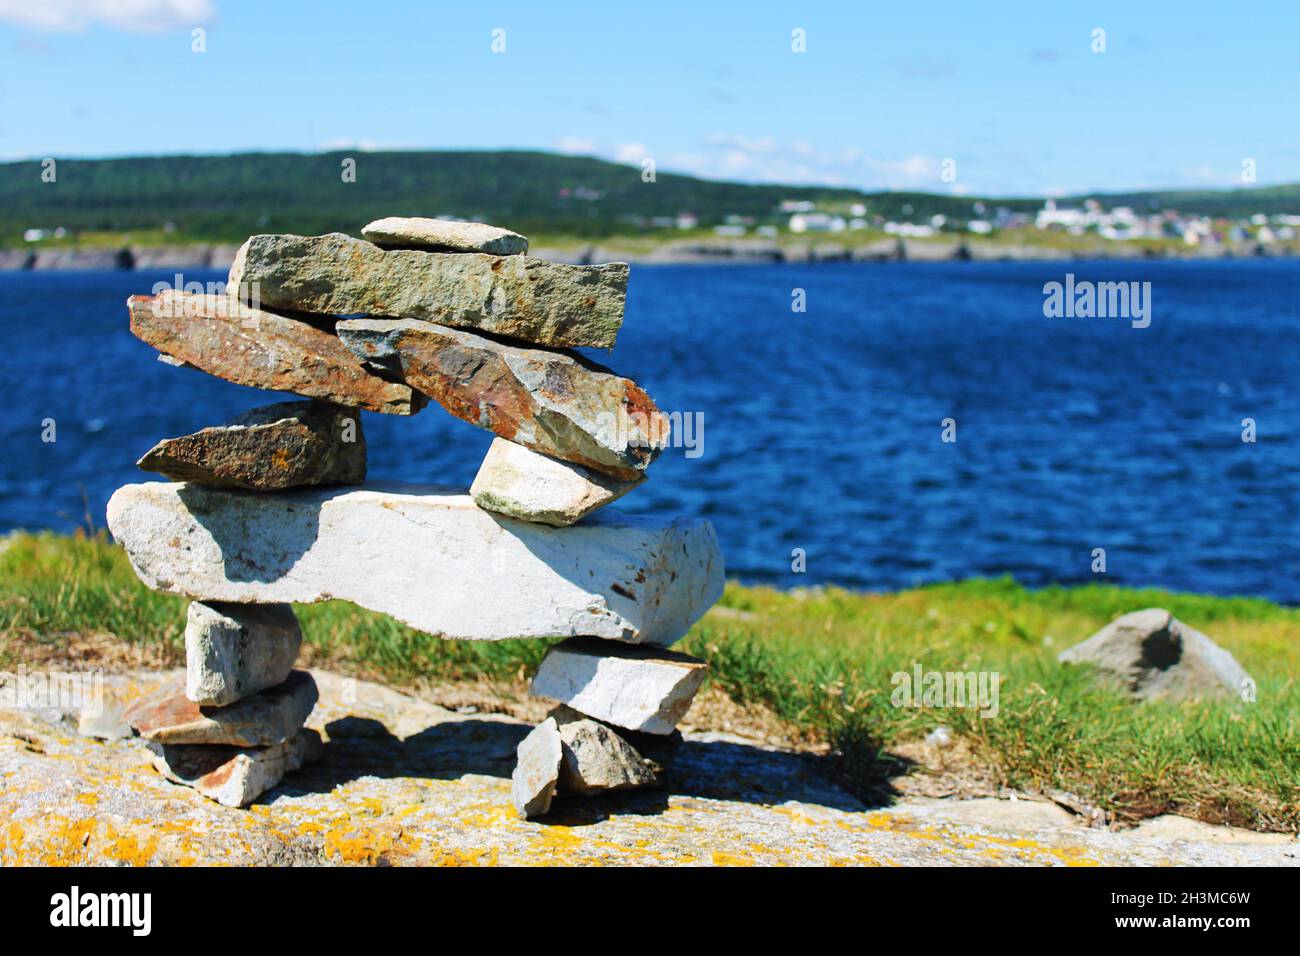 An inukshuk on a hill, overlooking the Ocean, Elliston, Newfoundland Stock Photo